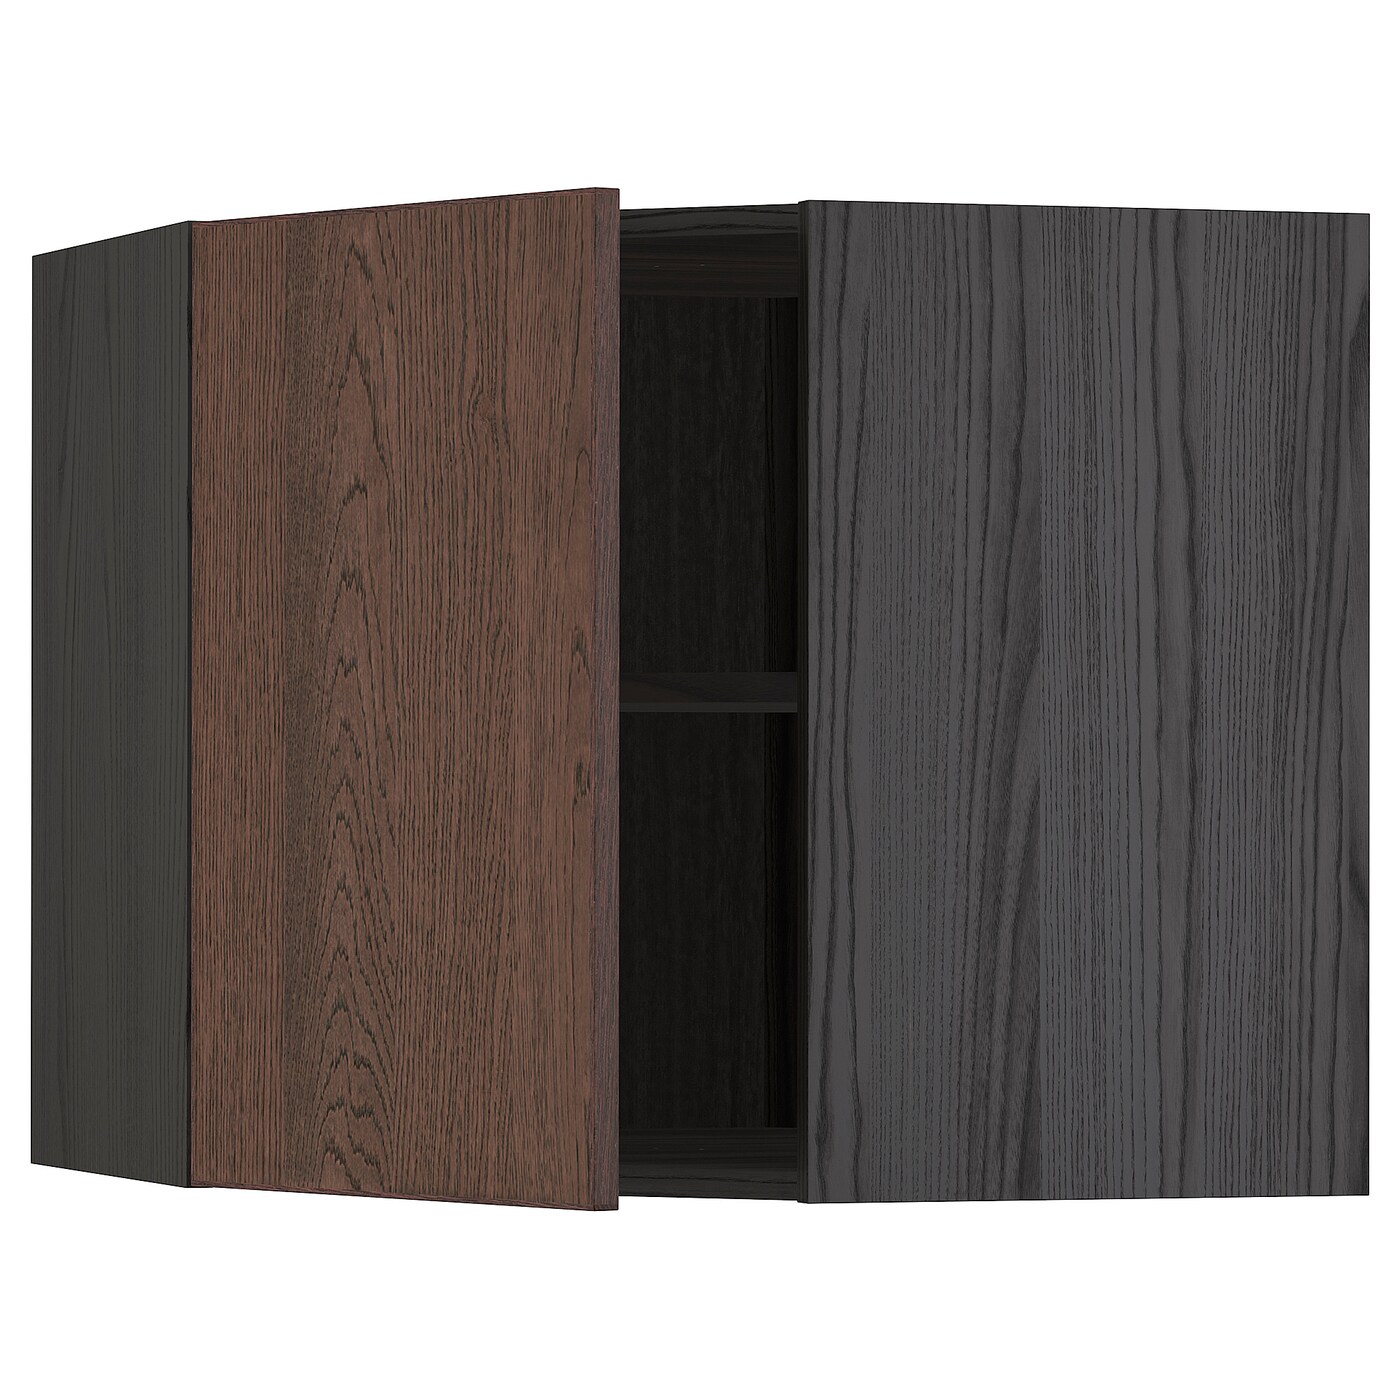 Угловой навесной шкаф с полками - METOD  IKEA/  МЕТОД ИКЕА, 60х68 см, черный/коричневый